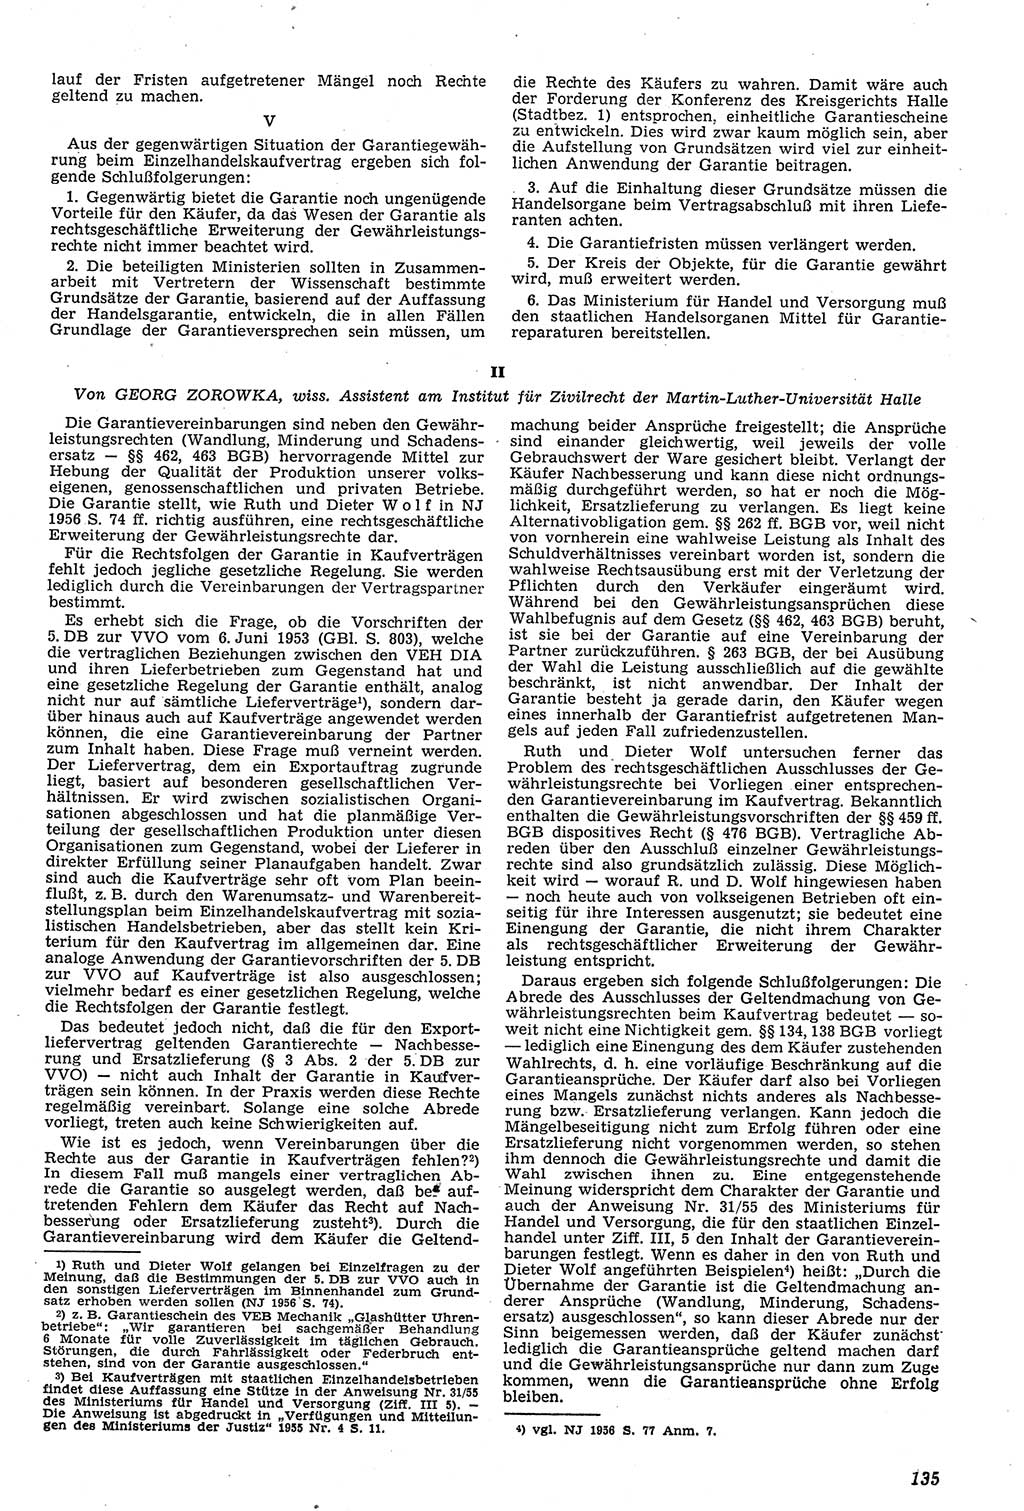 Neue Justiz (NJ), Zeitschrift für Recht und Rechtswissenschaft [Deutsche Demokratische Republik (DDR)], 11. Jahrgang 1957, Seite 135 (NJ DDR 1957, S. 135)